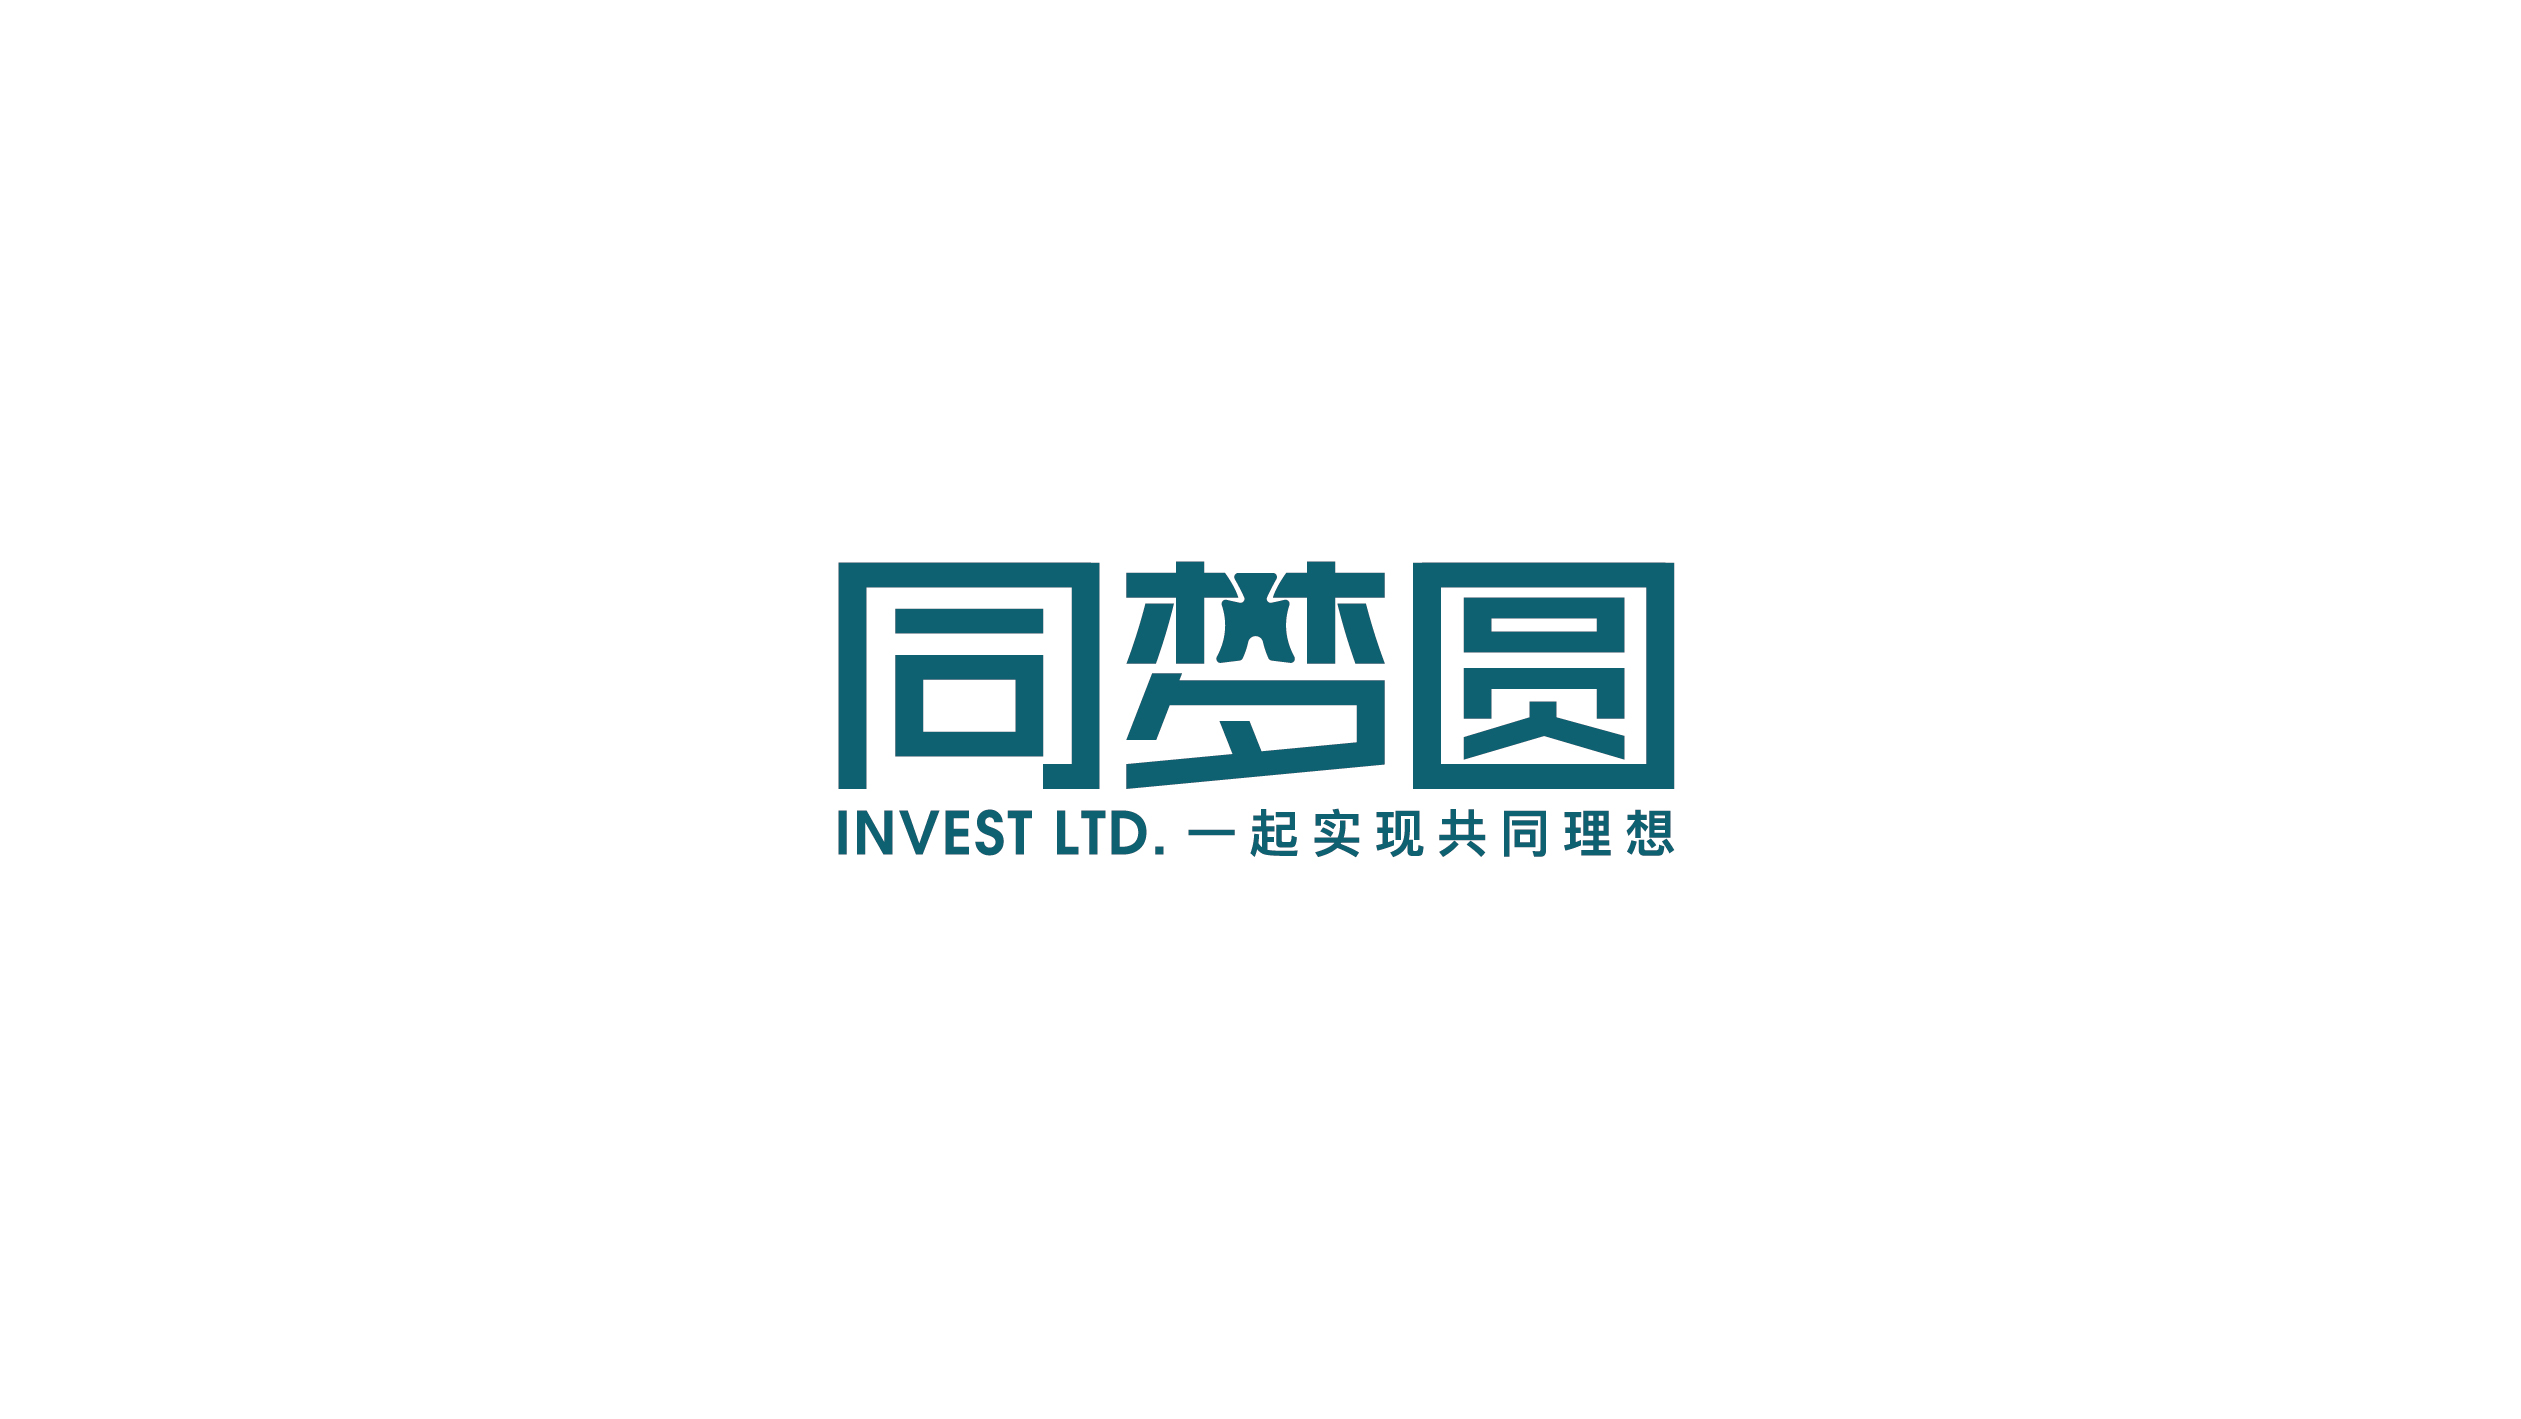 文字标-集团投资行业logo设计